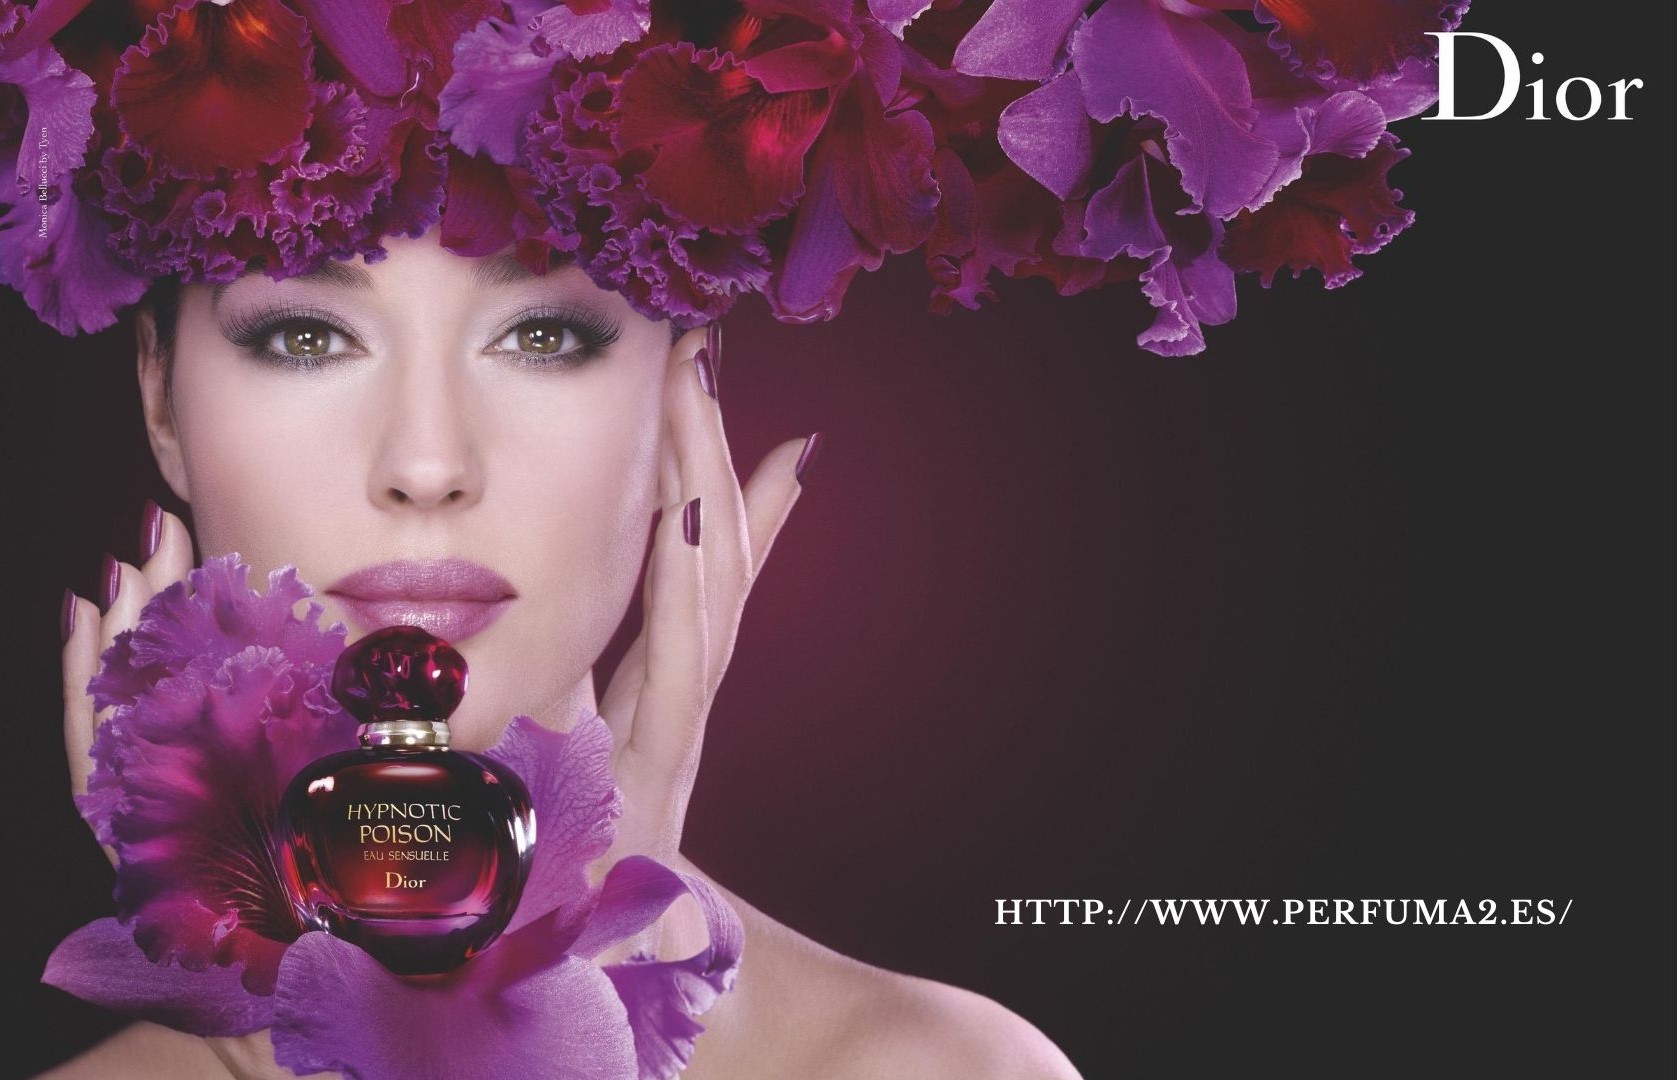 Images Perfuma2.es